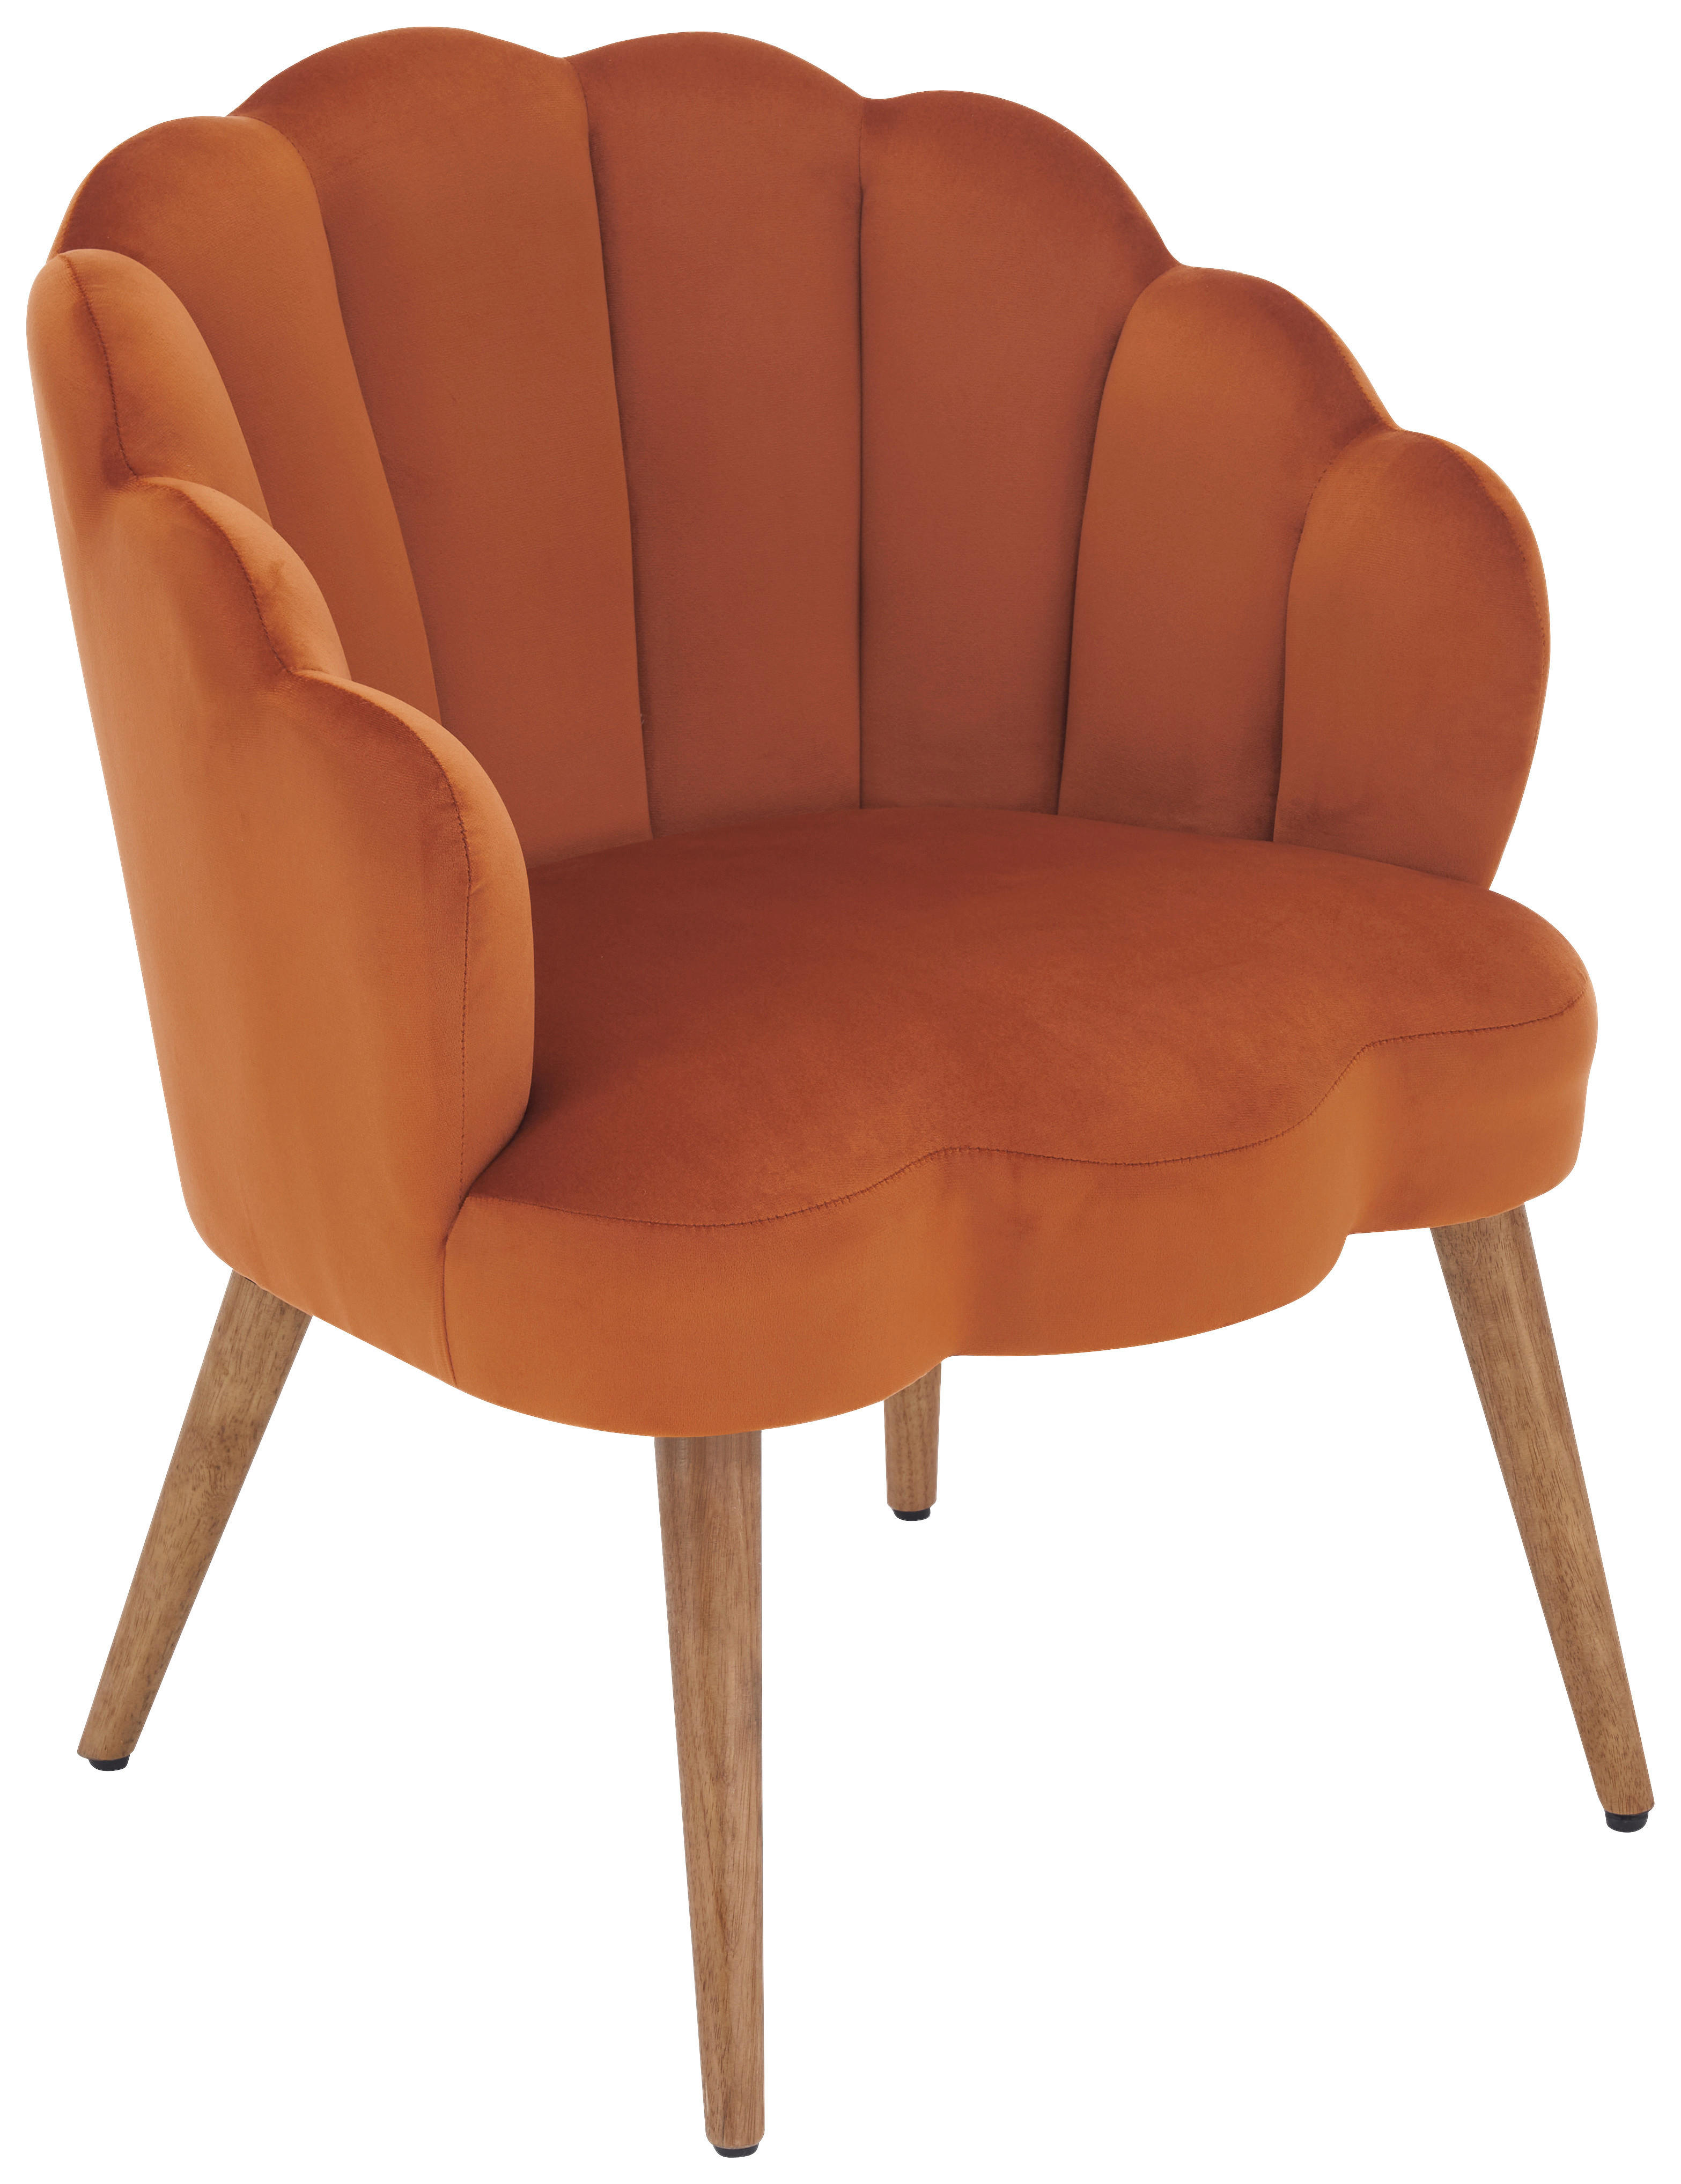 SESSEL Samt Orange, Ecru    - Ecru/Orange, Design, Holz/Textil (67/80/65cm) - MID.YOU